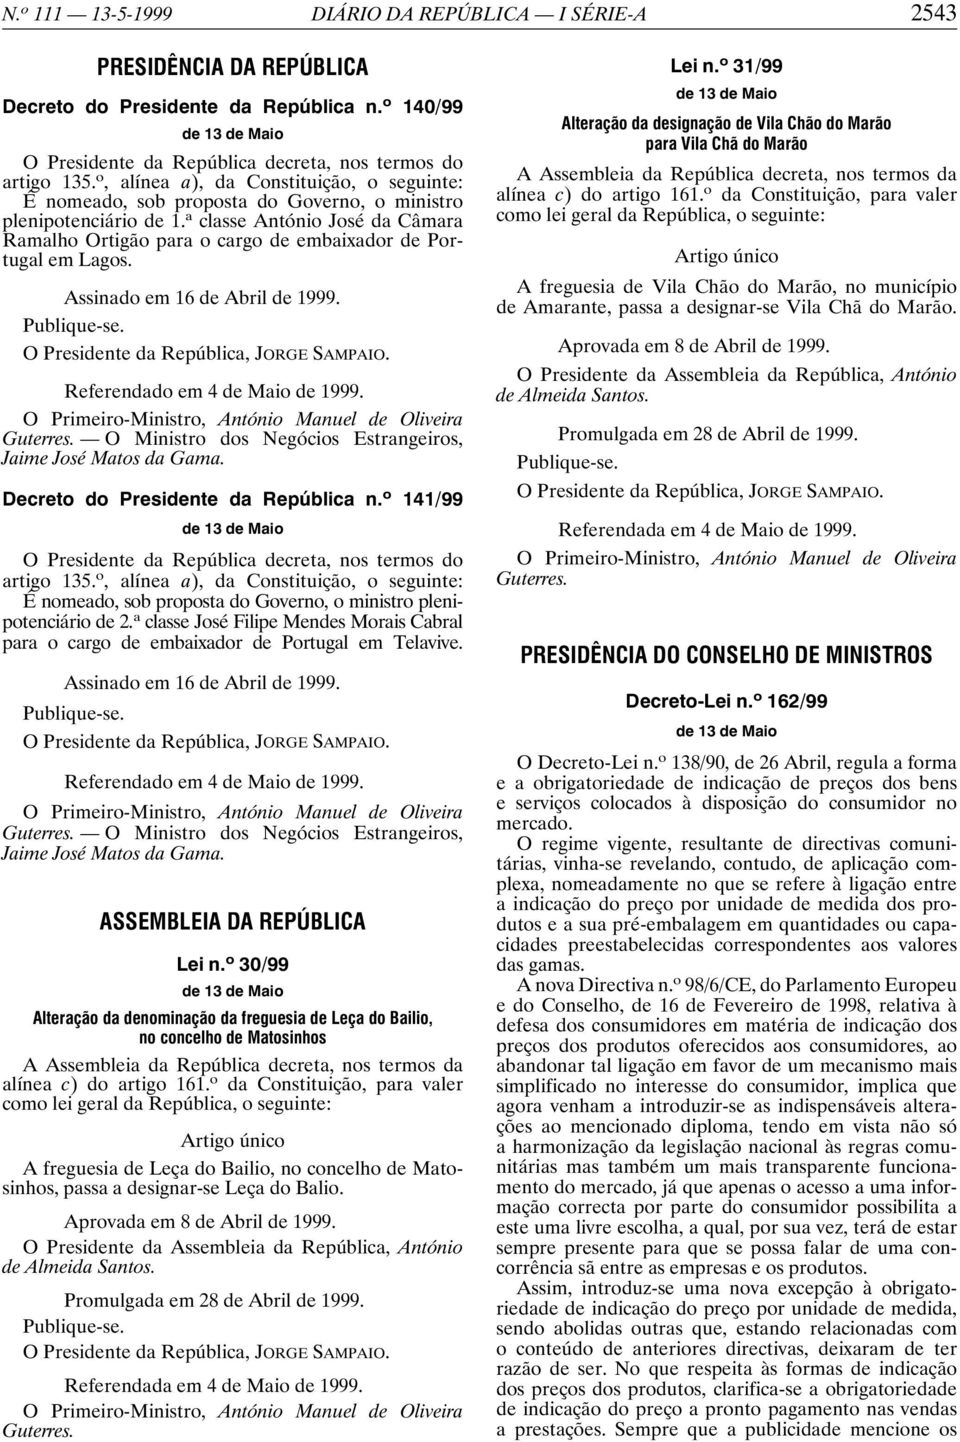 a classe António José da Câmara Ramalho Ortigão para o cargo de embaixador de Portugal em Lagos. Assinado em 16 de Abril de 1999. Referendado em 4 de Maio de 1999.